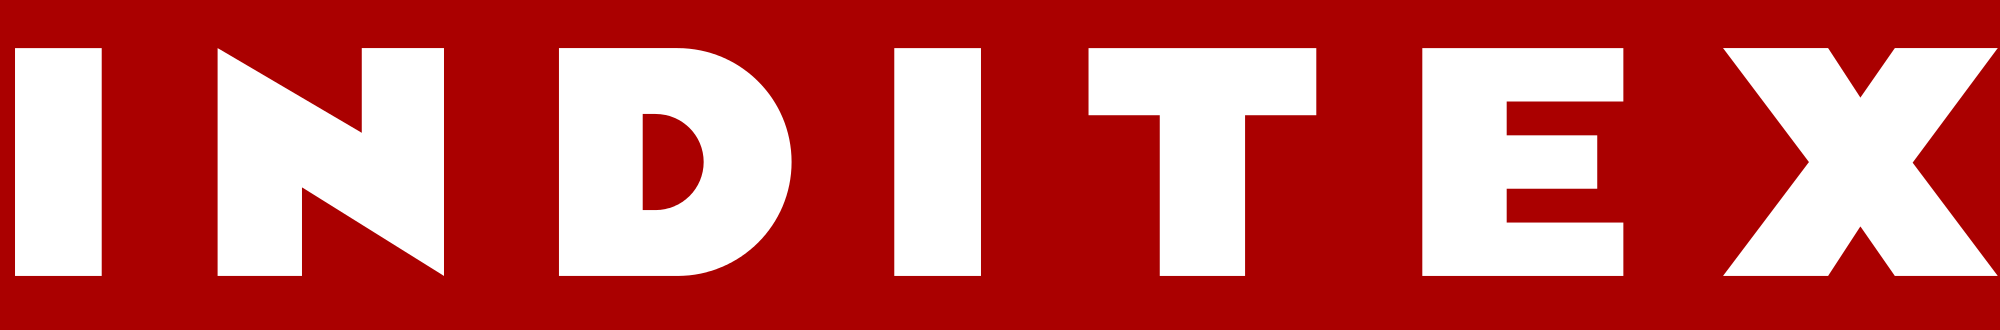 Inditex Logo PNG - 114519